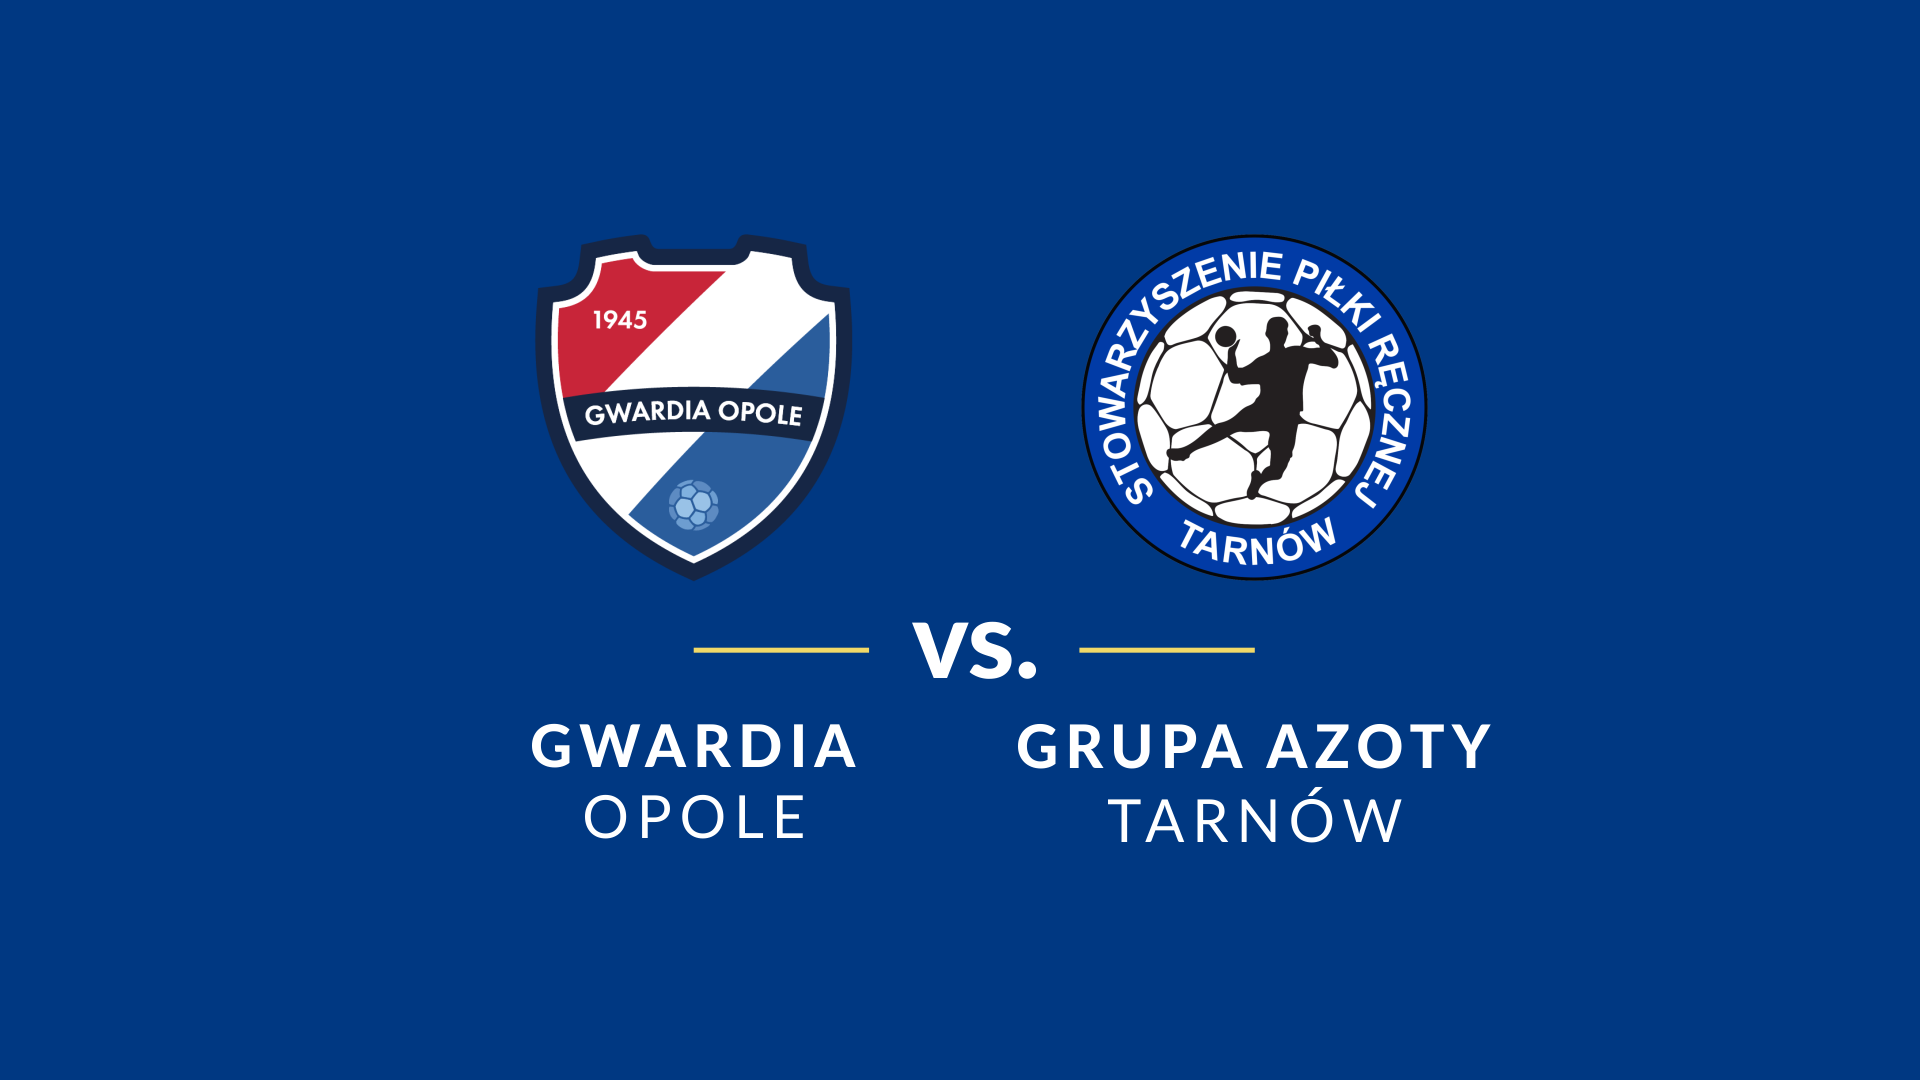 baner - logotypy Grupa Azoty Tarnów i Gwardii Opole